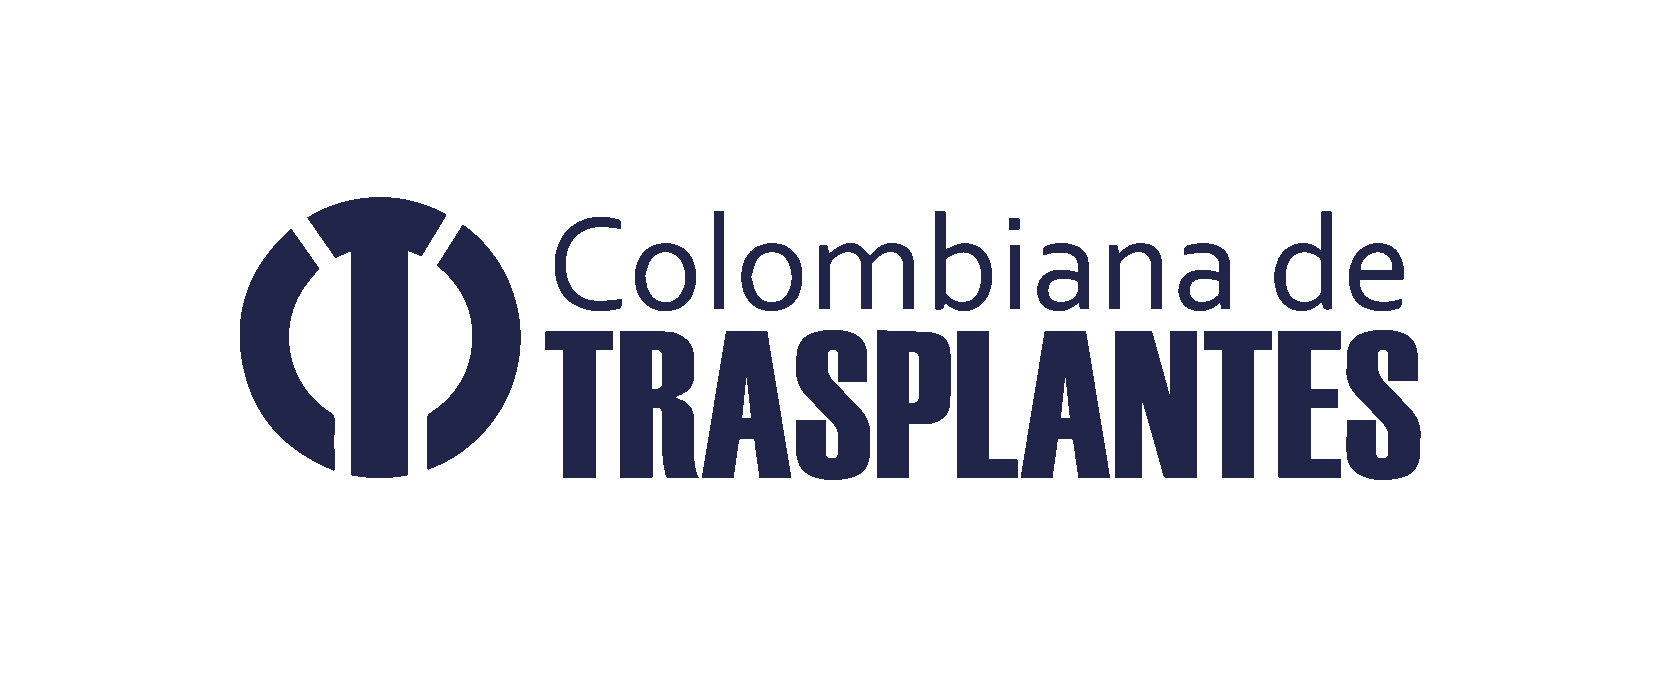 Ofertas de empleo en Colombiana de Trasplantes